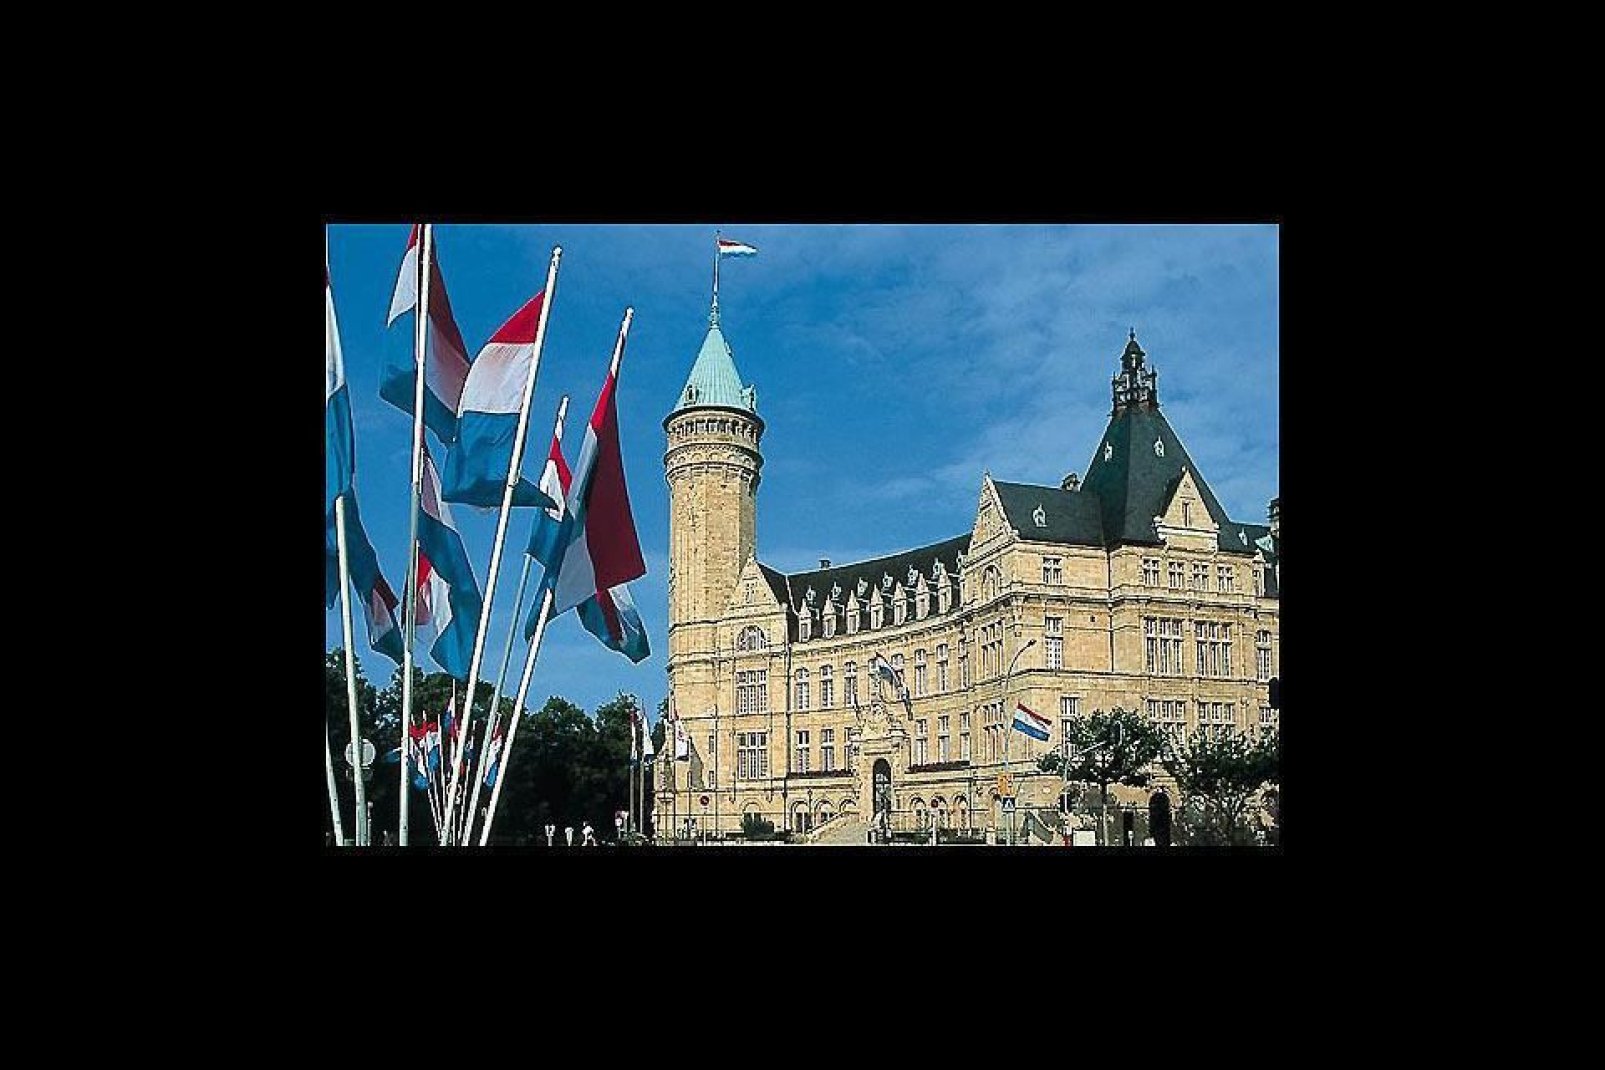 Luxemburgo es la capital del Gran Ducado homónimo: situado en un espolón rocoso, es una auténtica fortaleza natural. En la foto, el Palacio del Gran Ducado.